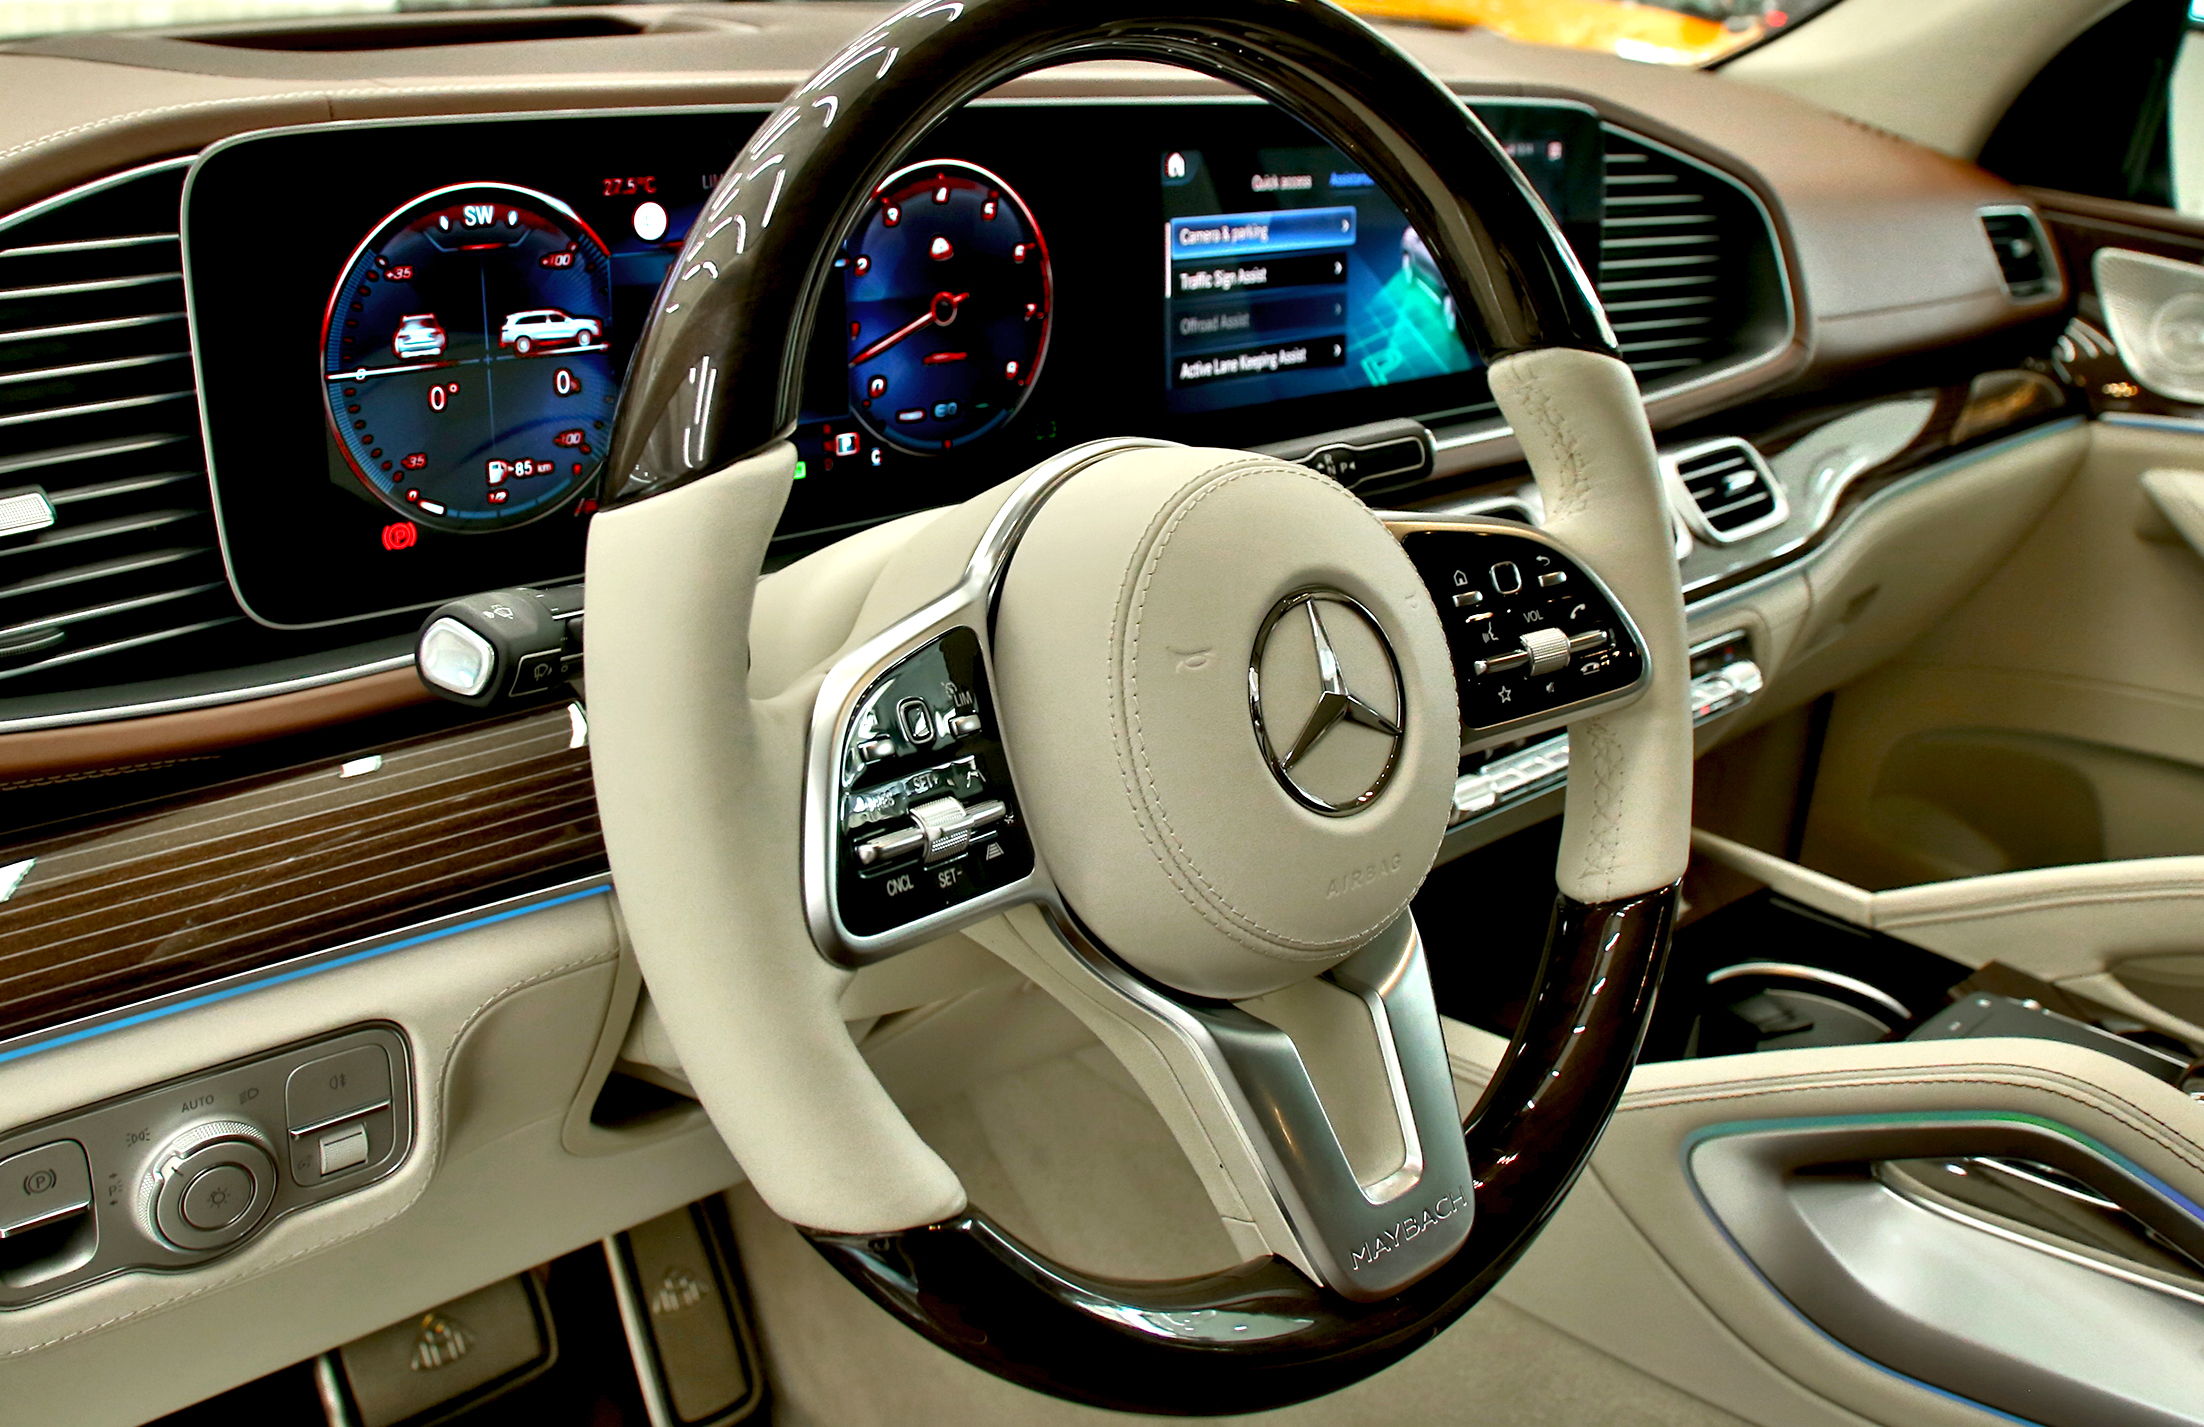 Mercedes-Benz GLS600 Maybach 5 Years Warranty. Local Registration + 5% Prestige Motor Dubai